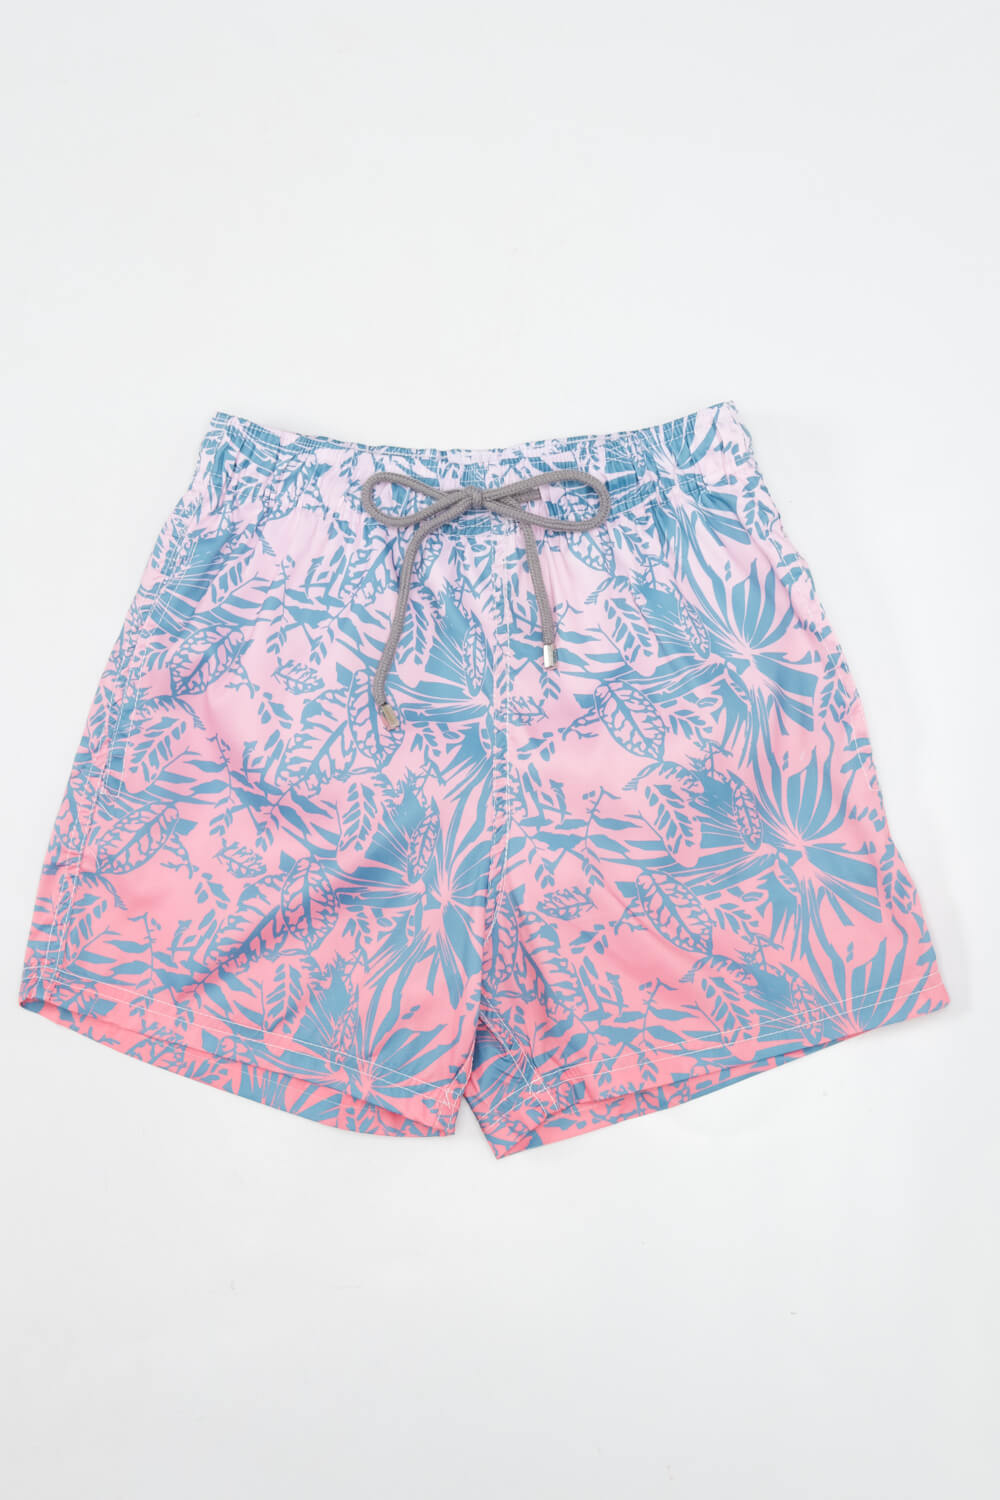 Μαγιό Ανδρικό Shorts Floral Slim Fit Ροζ